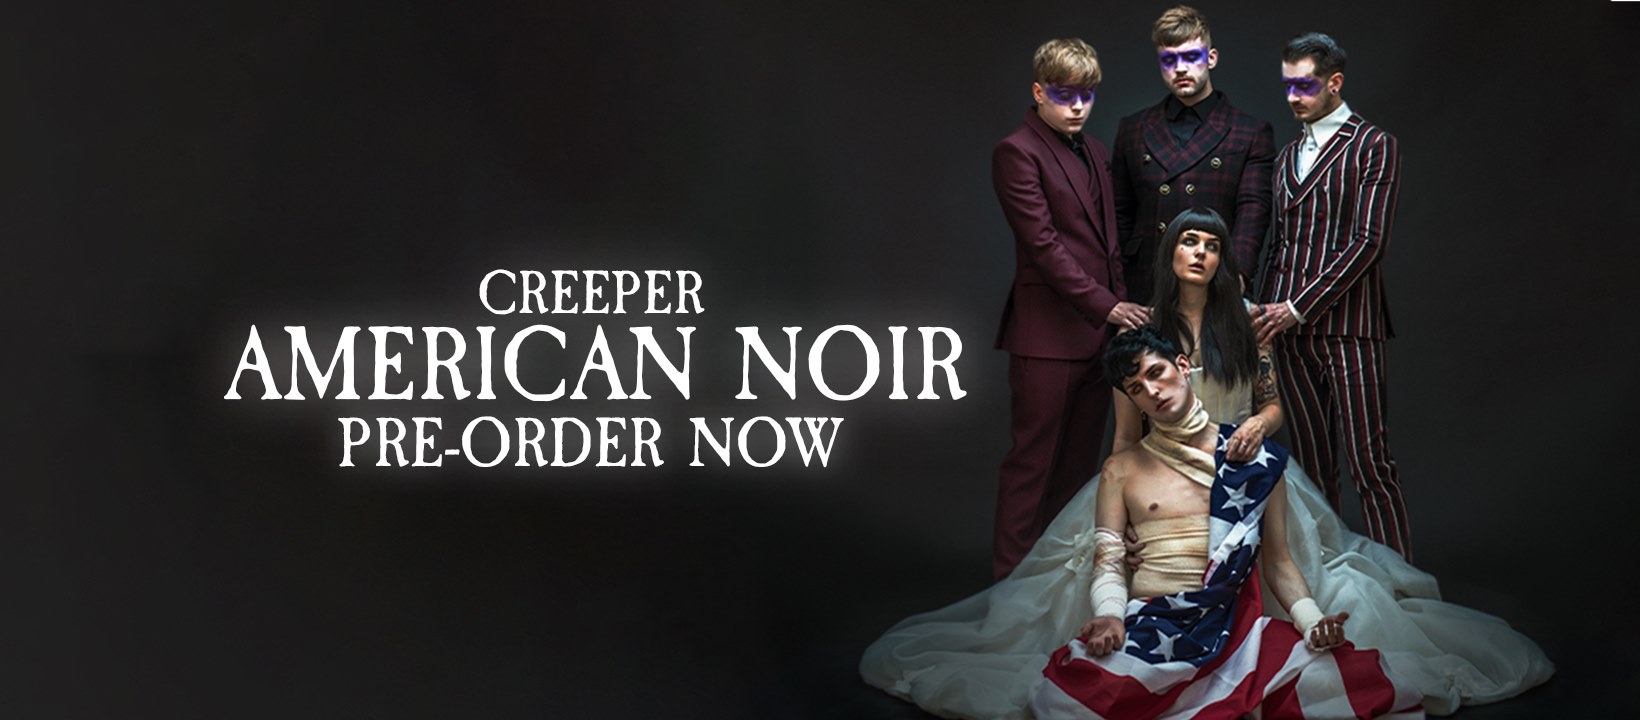 “Midnight” El primer sencillo del nuevo disco de Creeper titulado “American Noir”